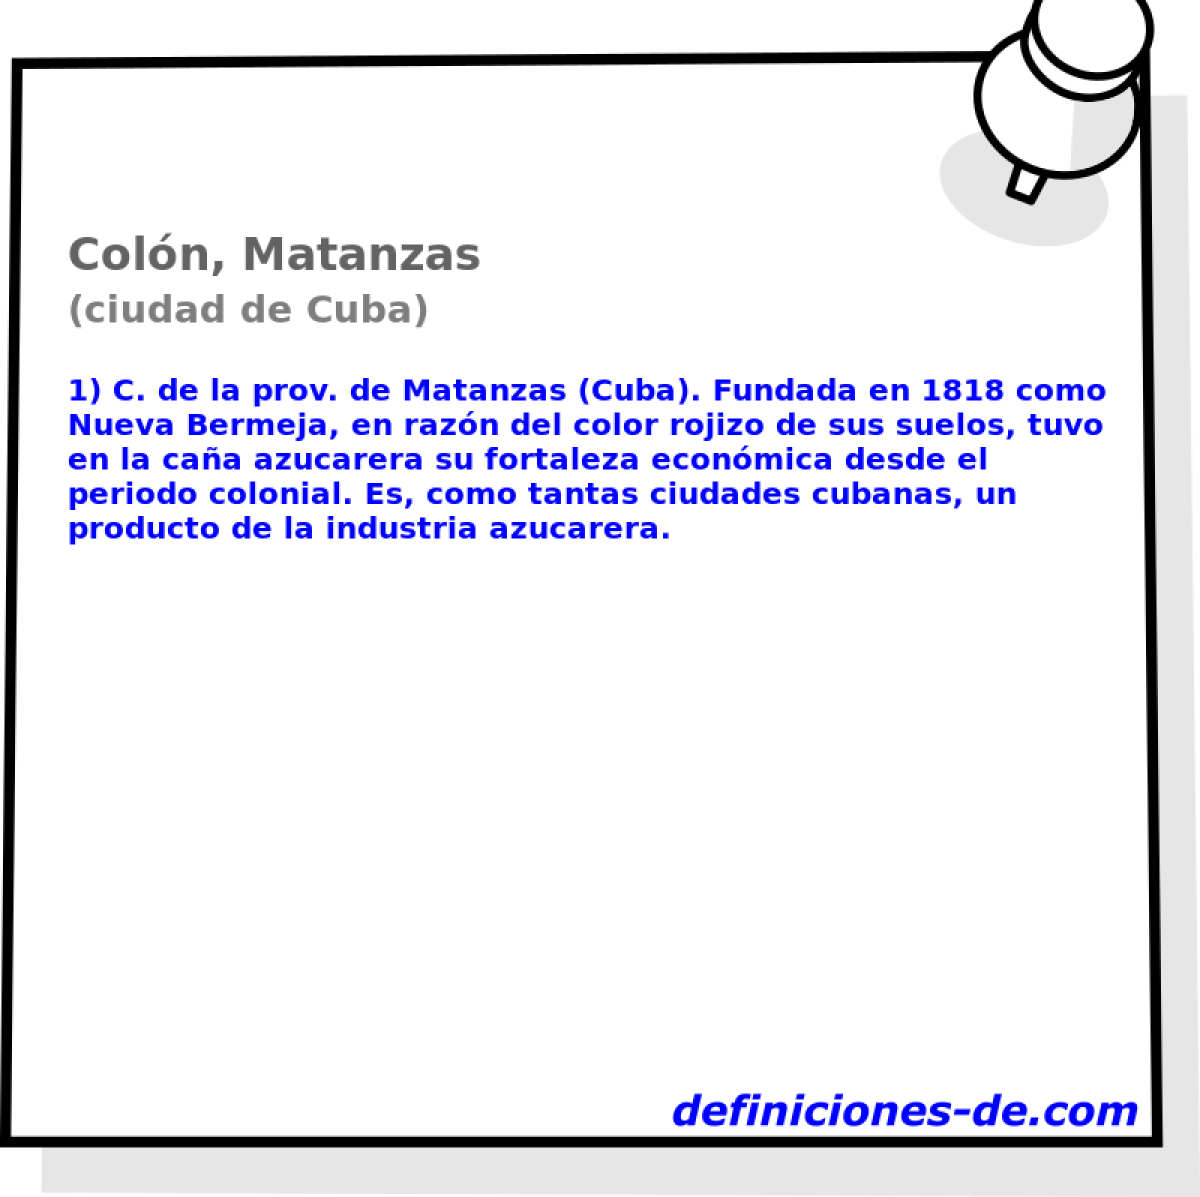 Coln, Matanzas (ciudad de Cuba)